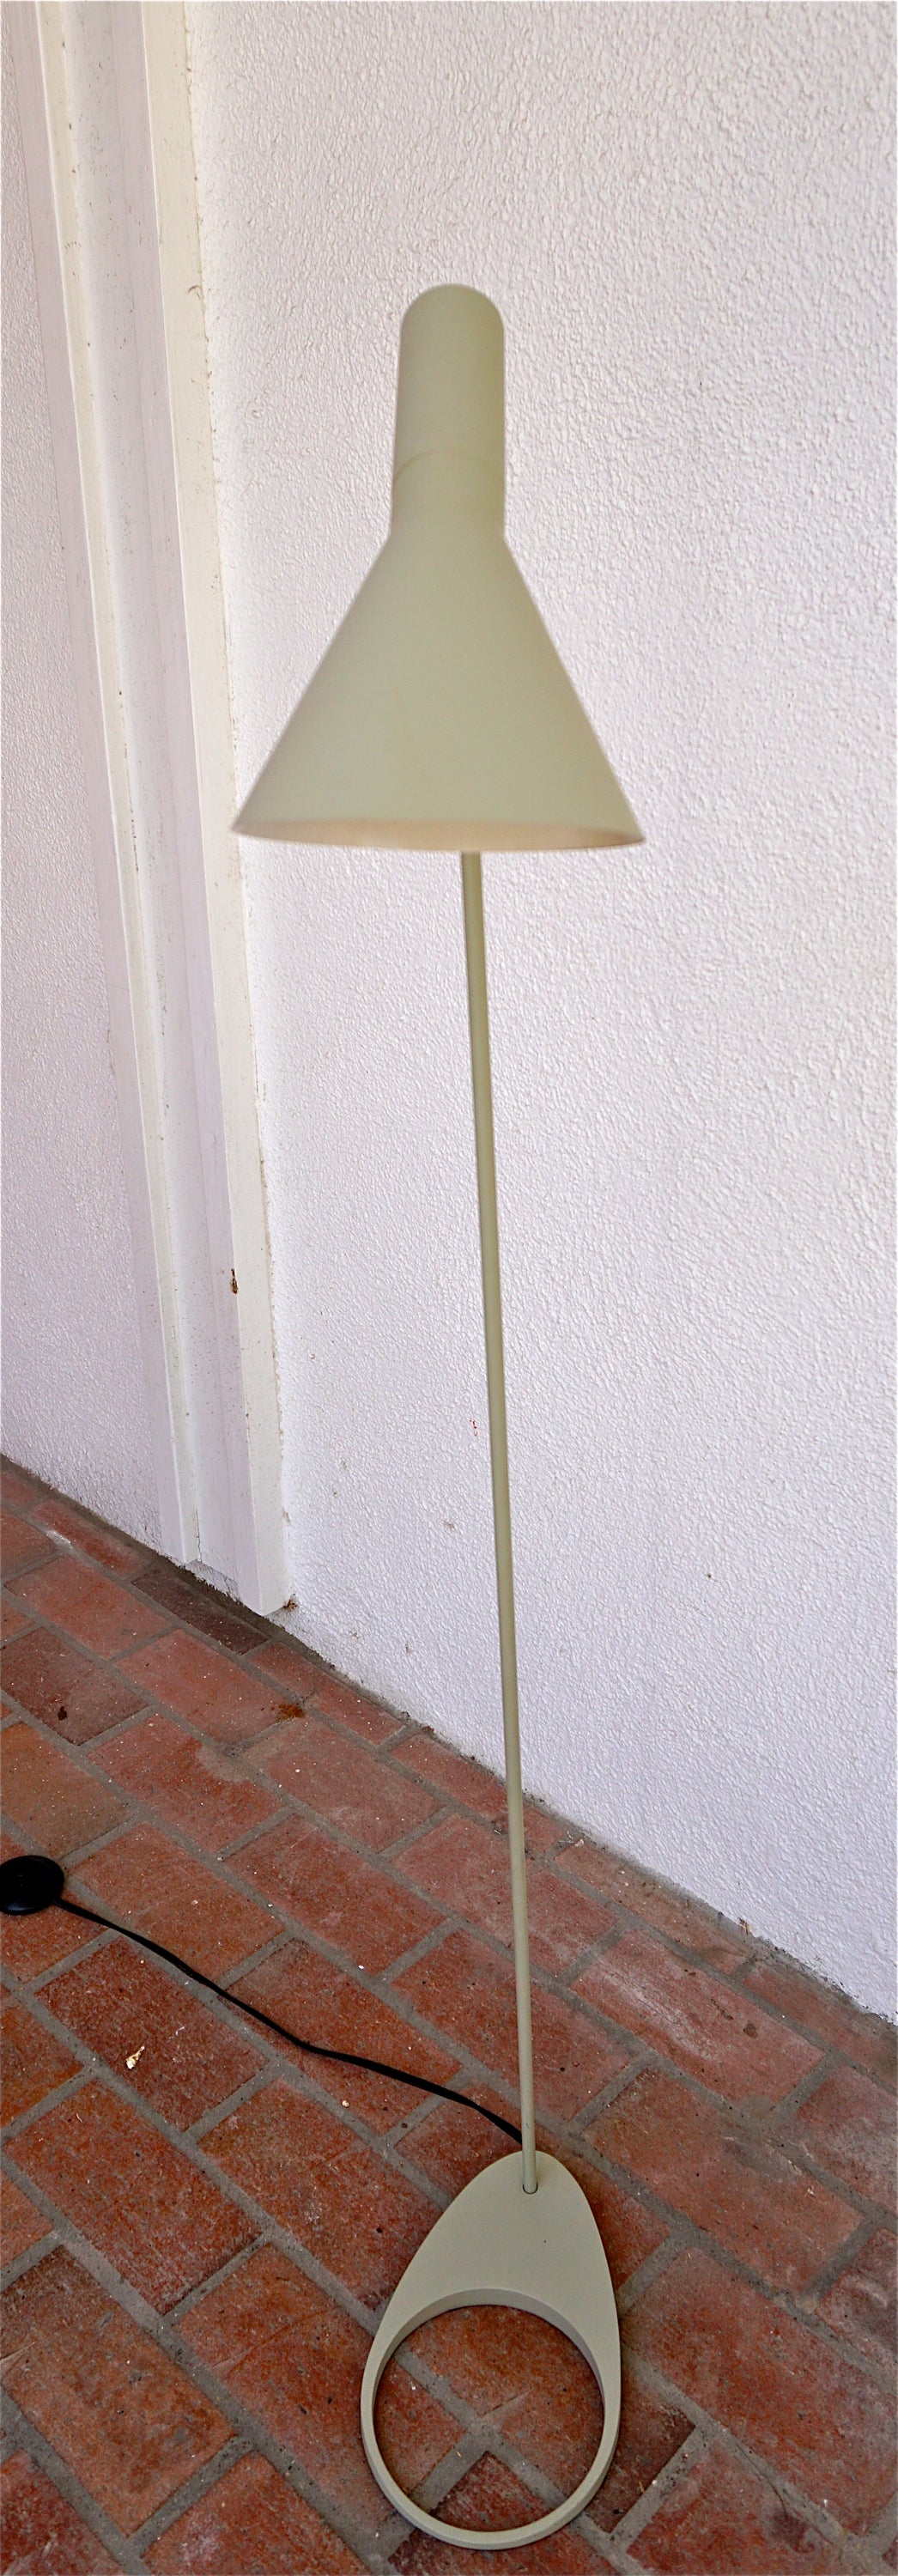 Mid-20th Century Arne Jacobsen AJ Visor Floor Lamp for Louis Poulson, 1957